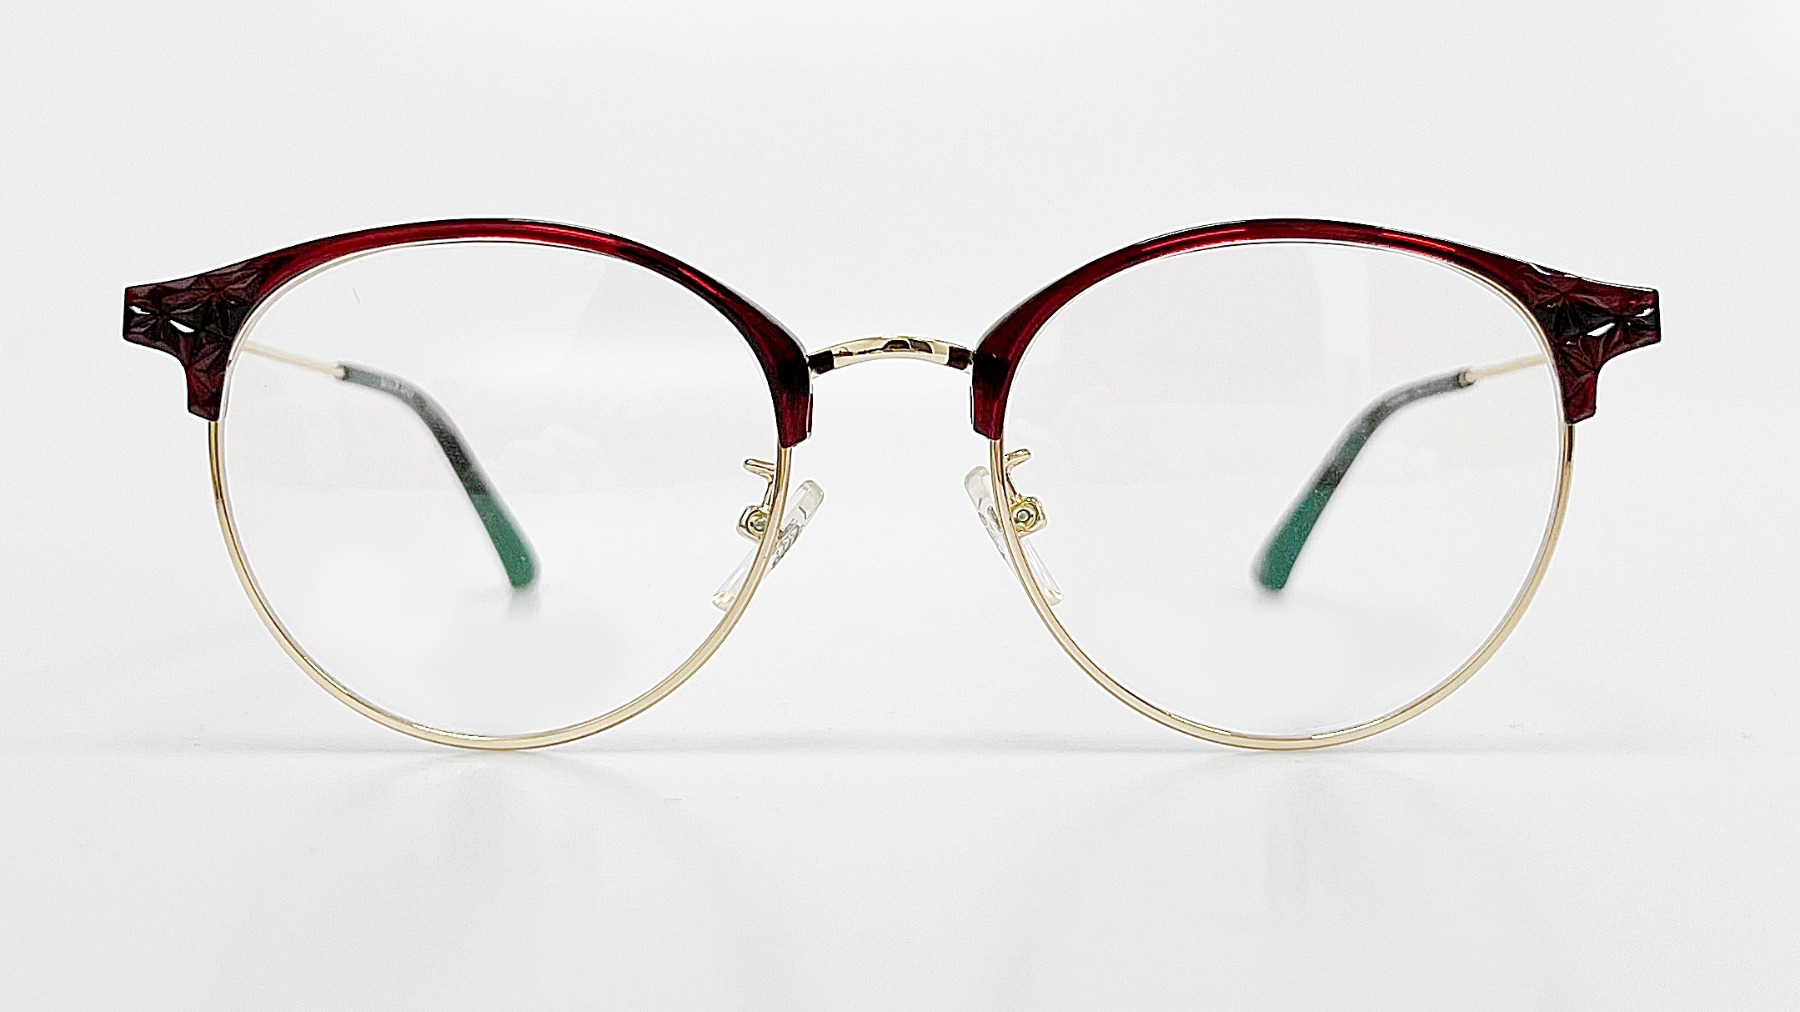 HELLEN KELLER-H26068, Korean glasses, sunglasses, eyeglasses, glasses